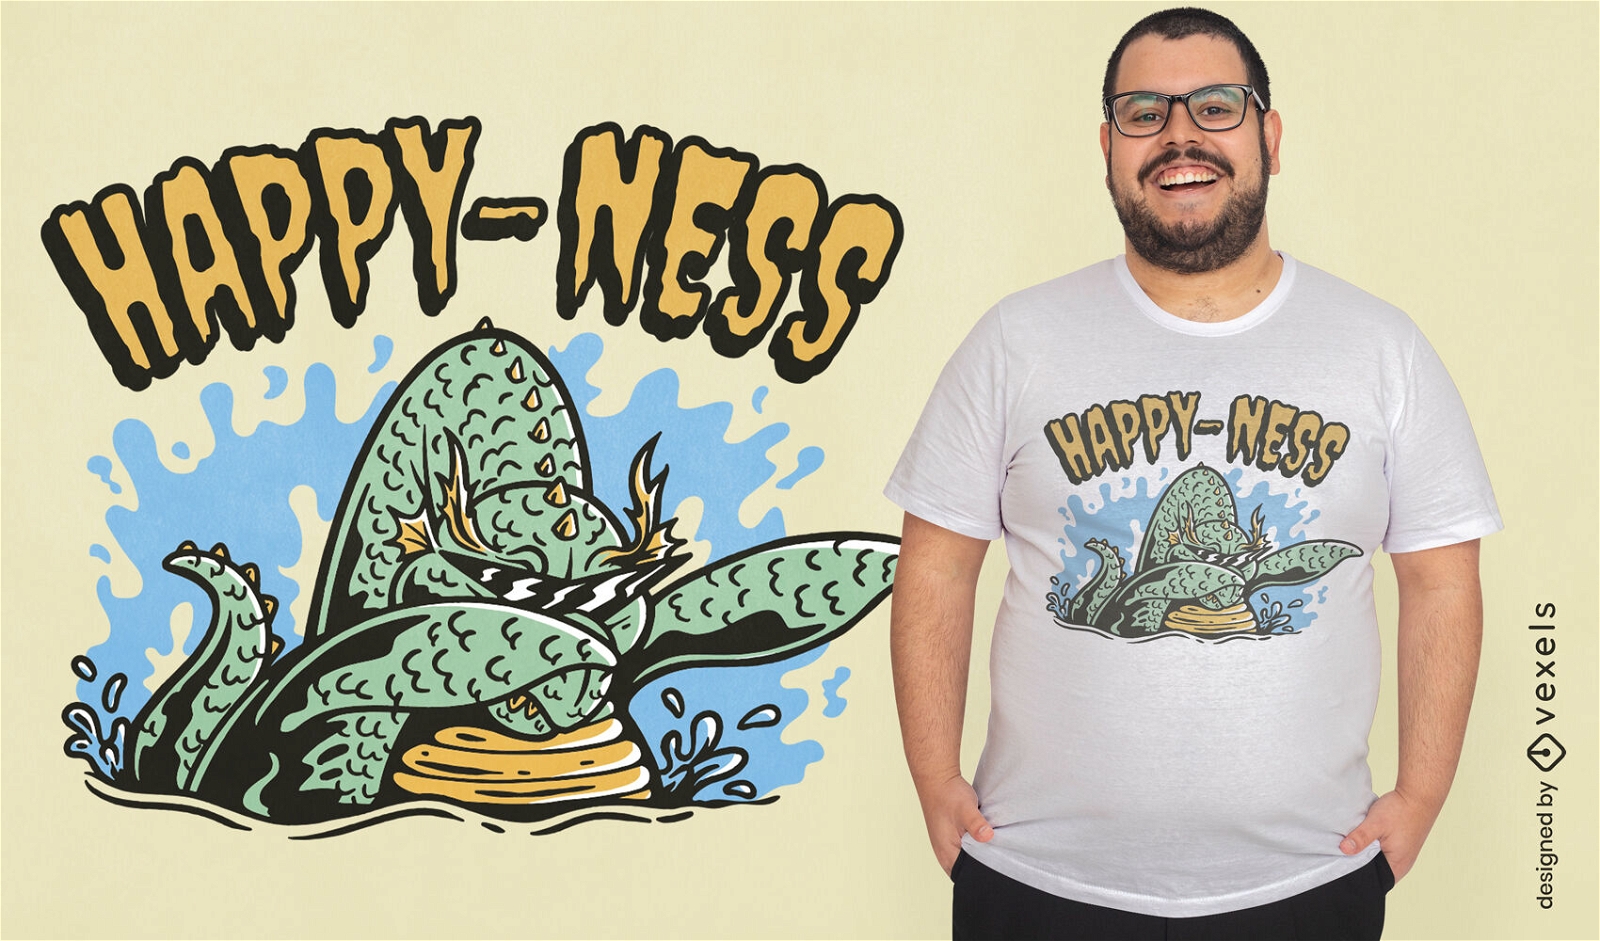 Monster von Loch Ness, das lustiges T-Shirt Design abtupft